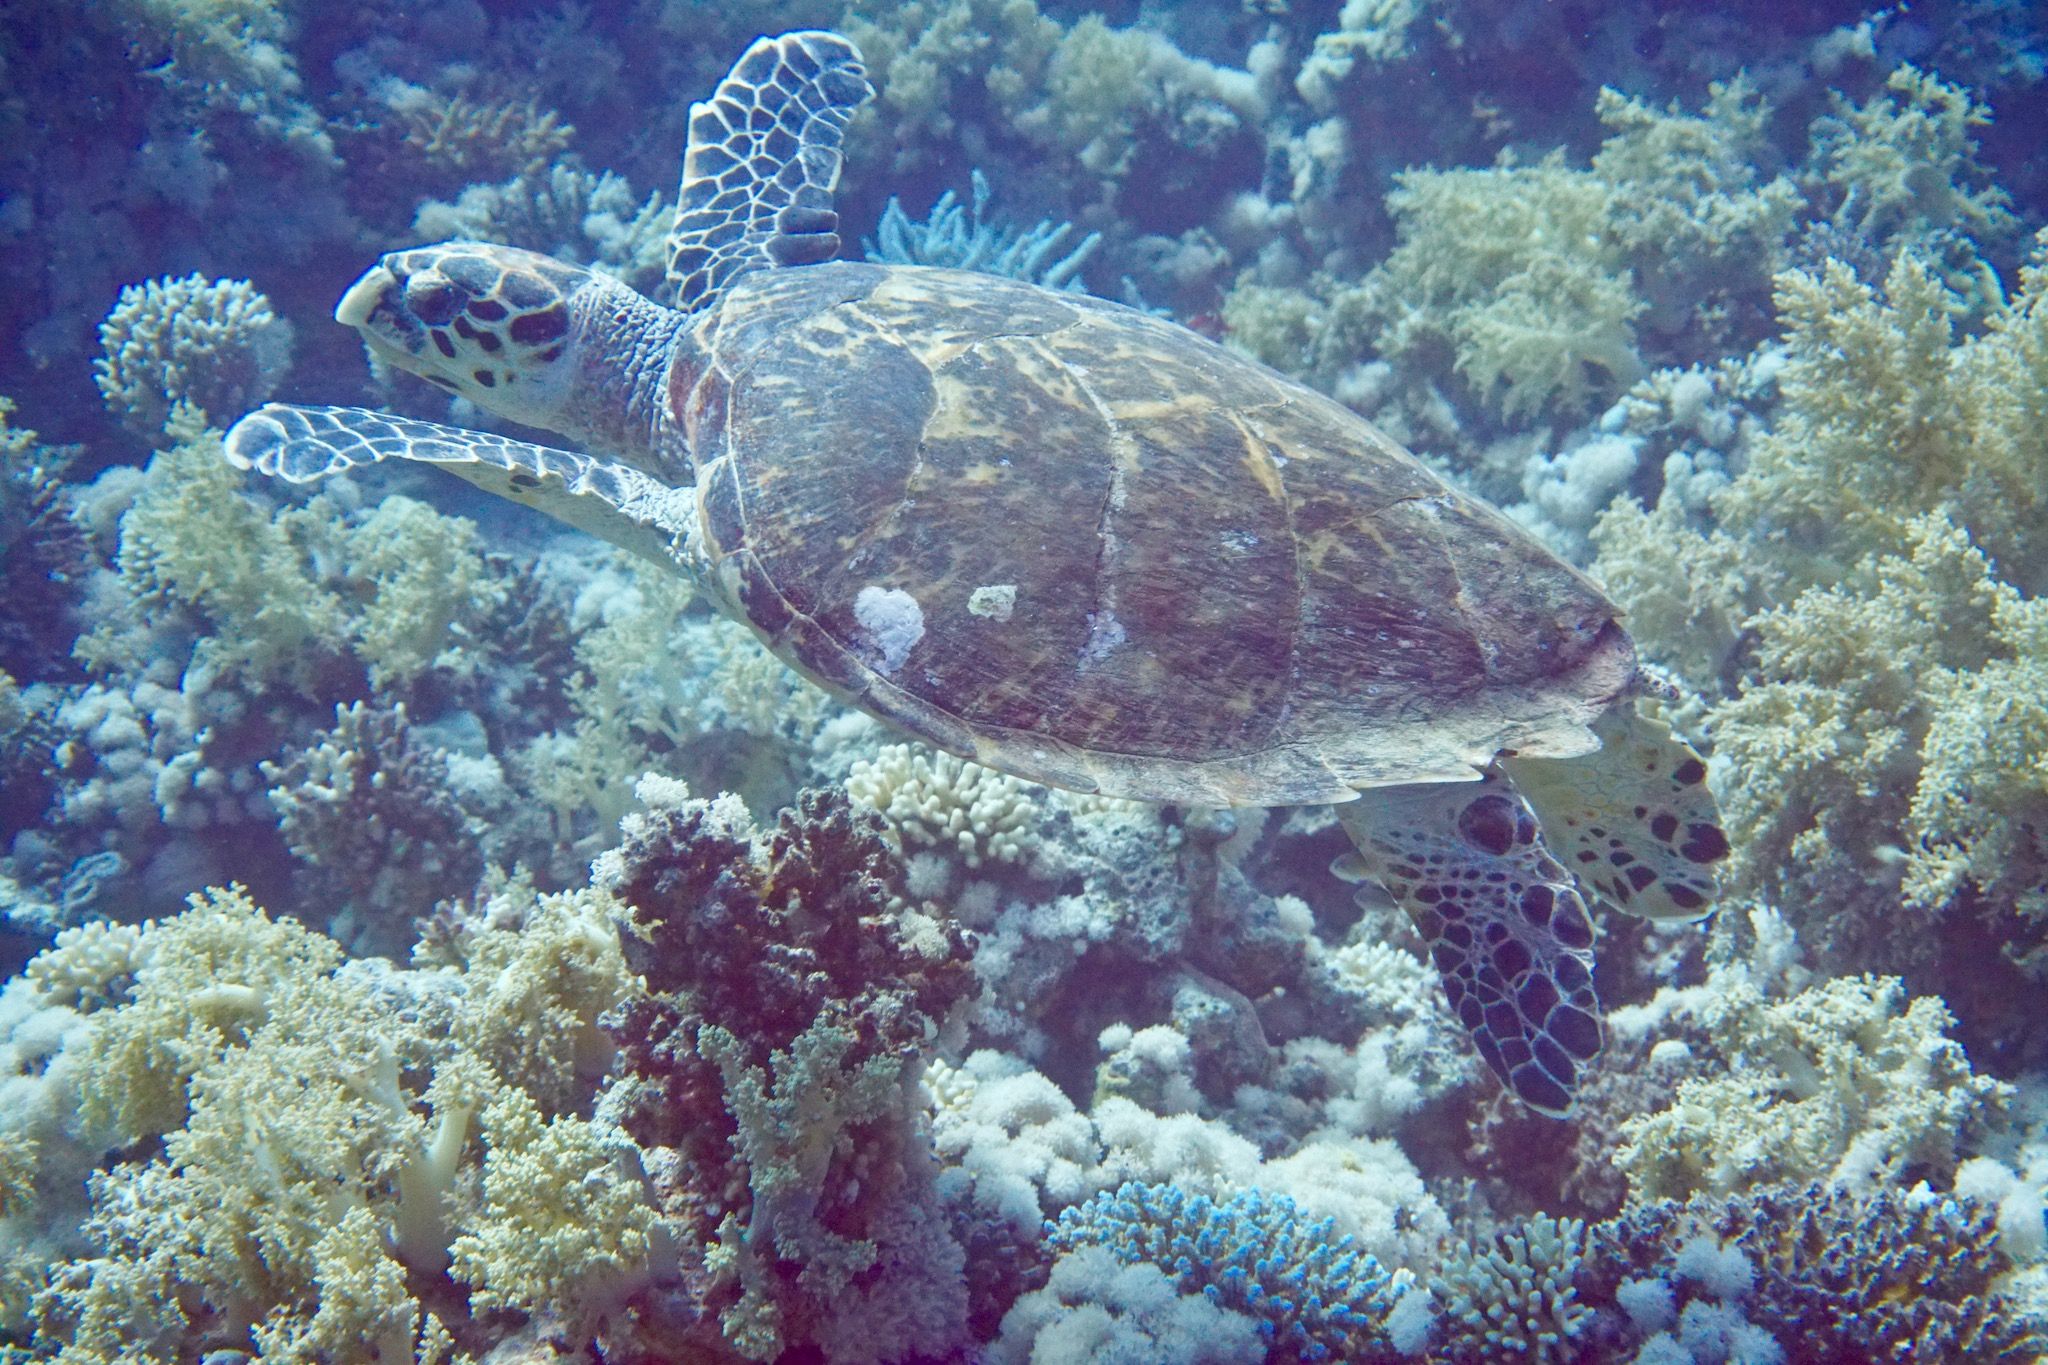 Echte Karettschildkröte: Sie kann im Roten Meer häufig bewundert werden. Foto: Sascha Tegtmeyer